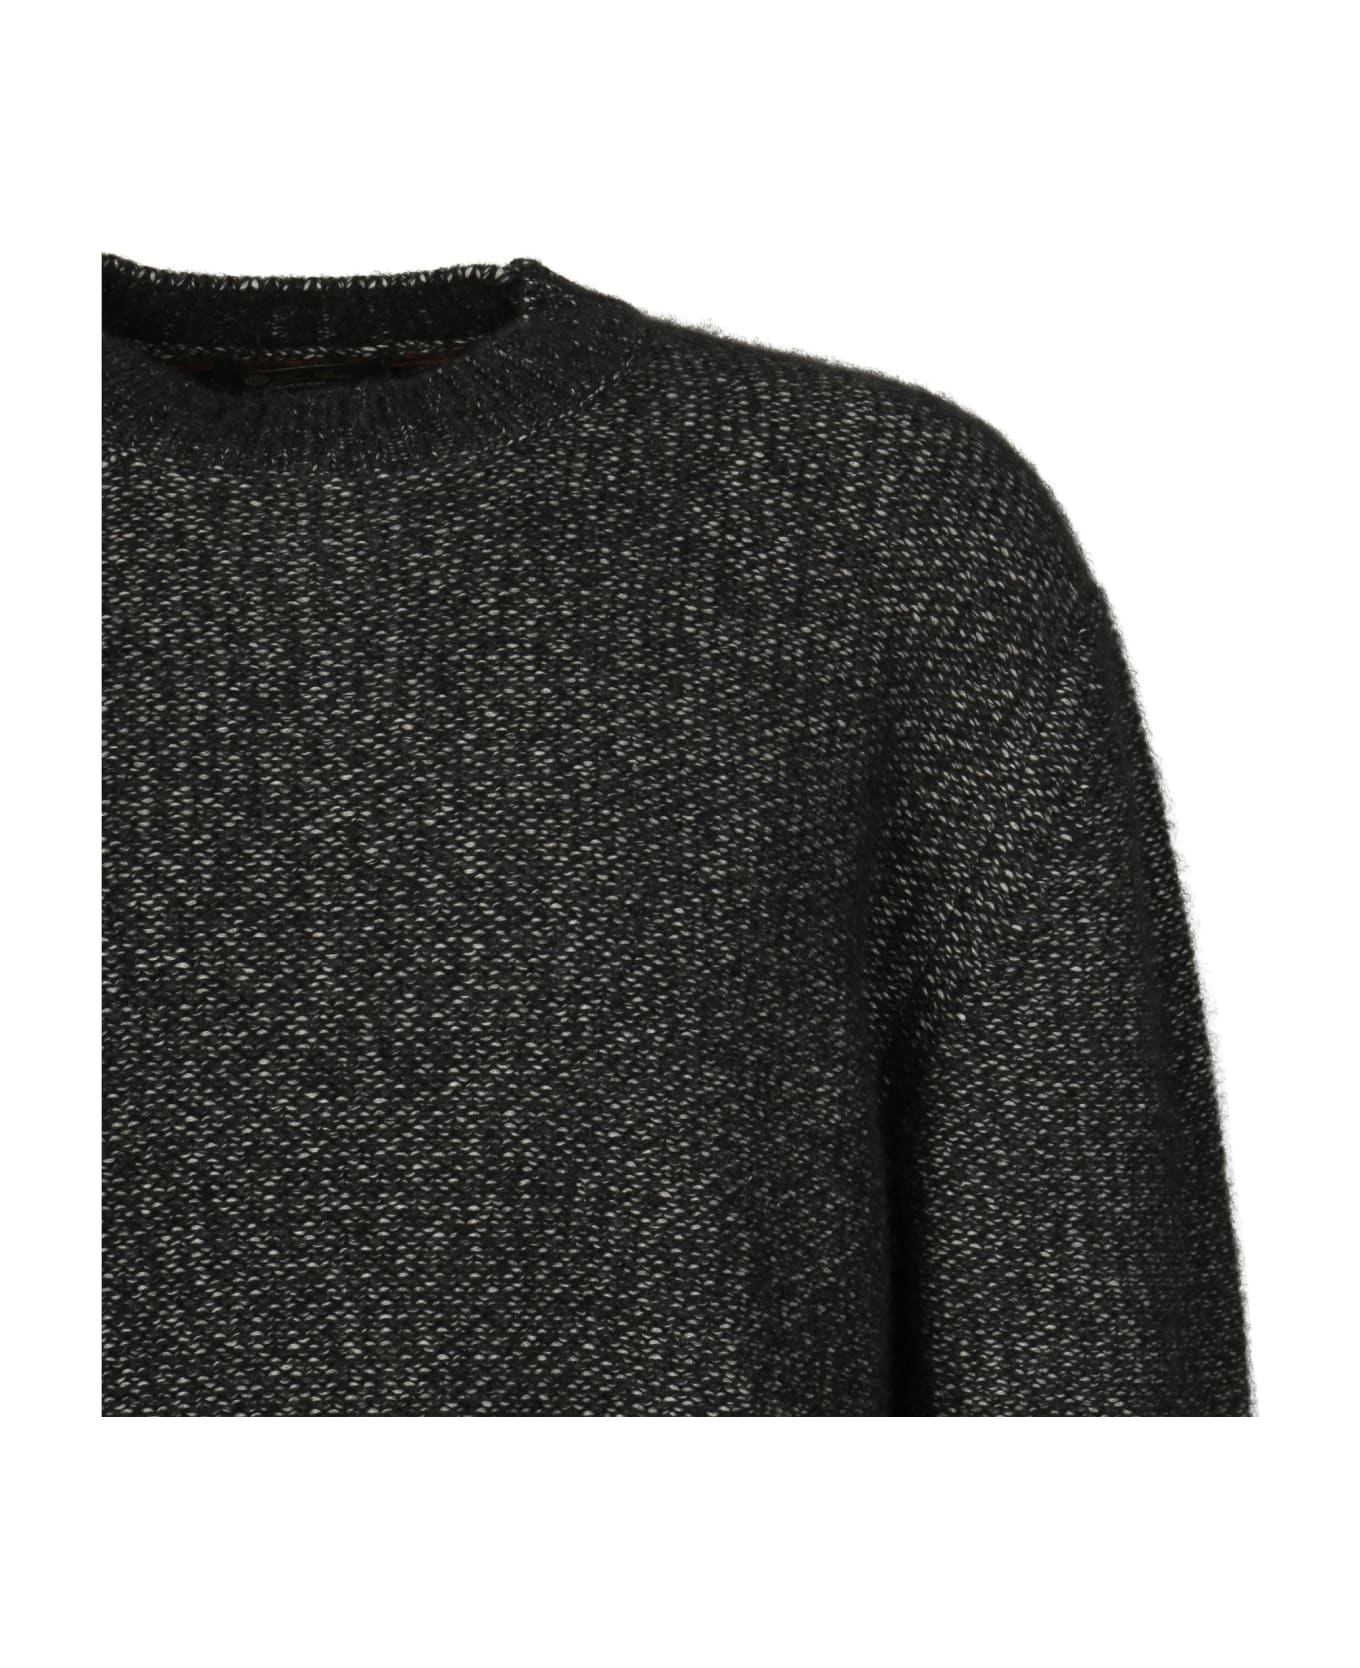 Loro Piana Dunstan Sweater - Black ニットウェア